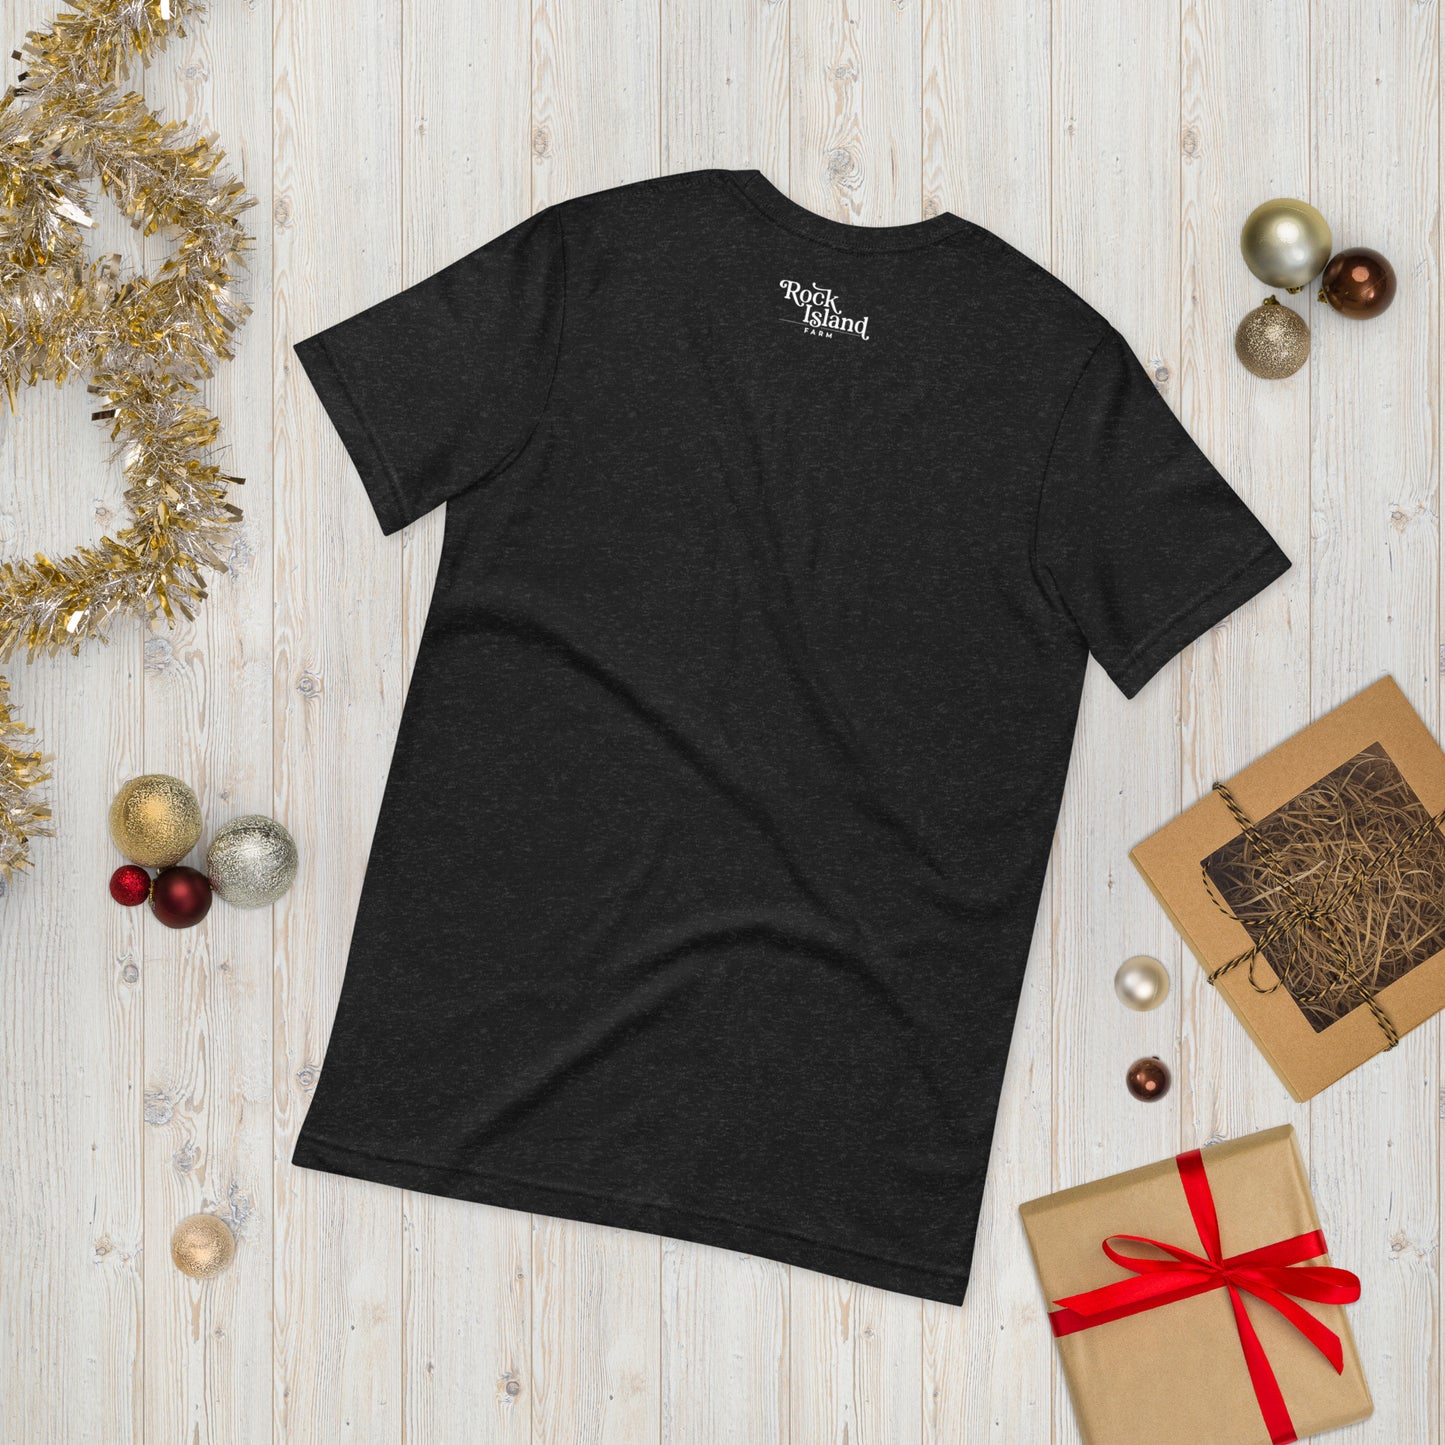 Santa Corgi T-shirt